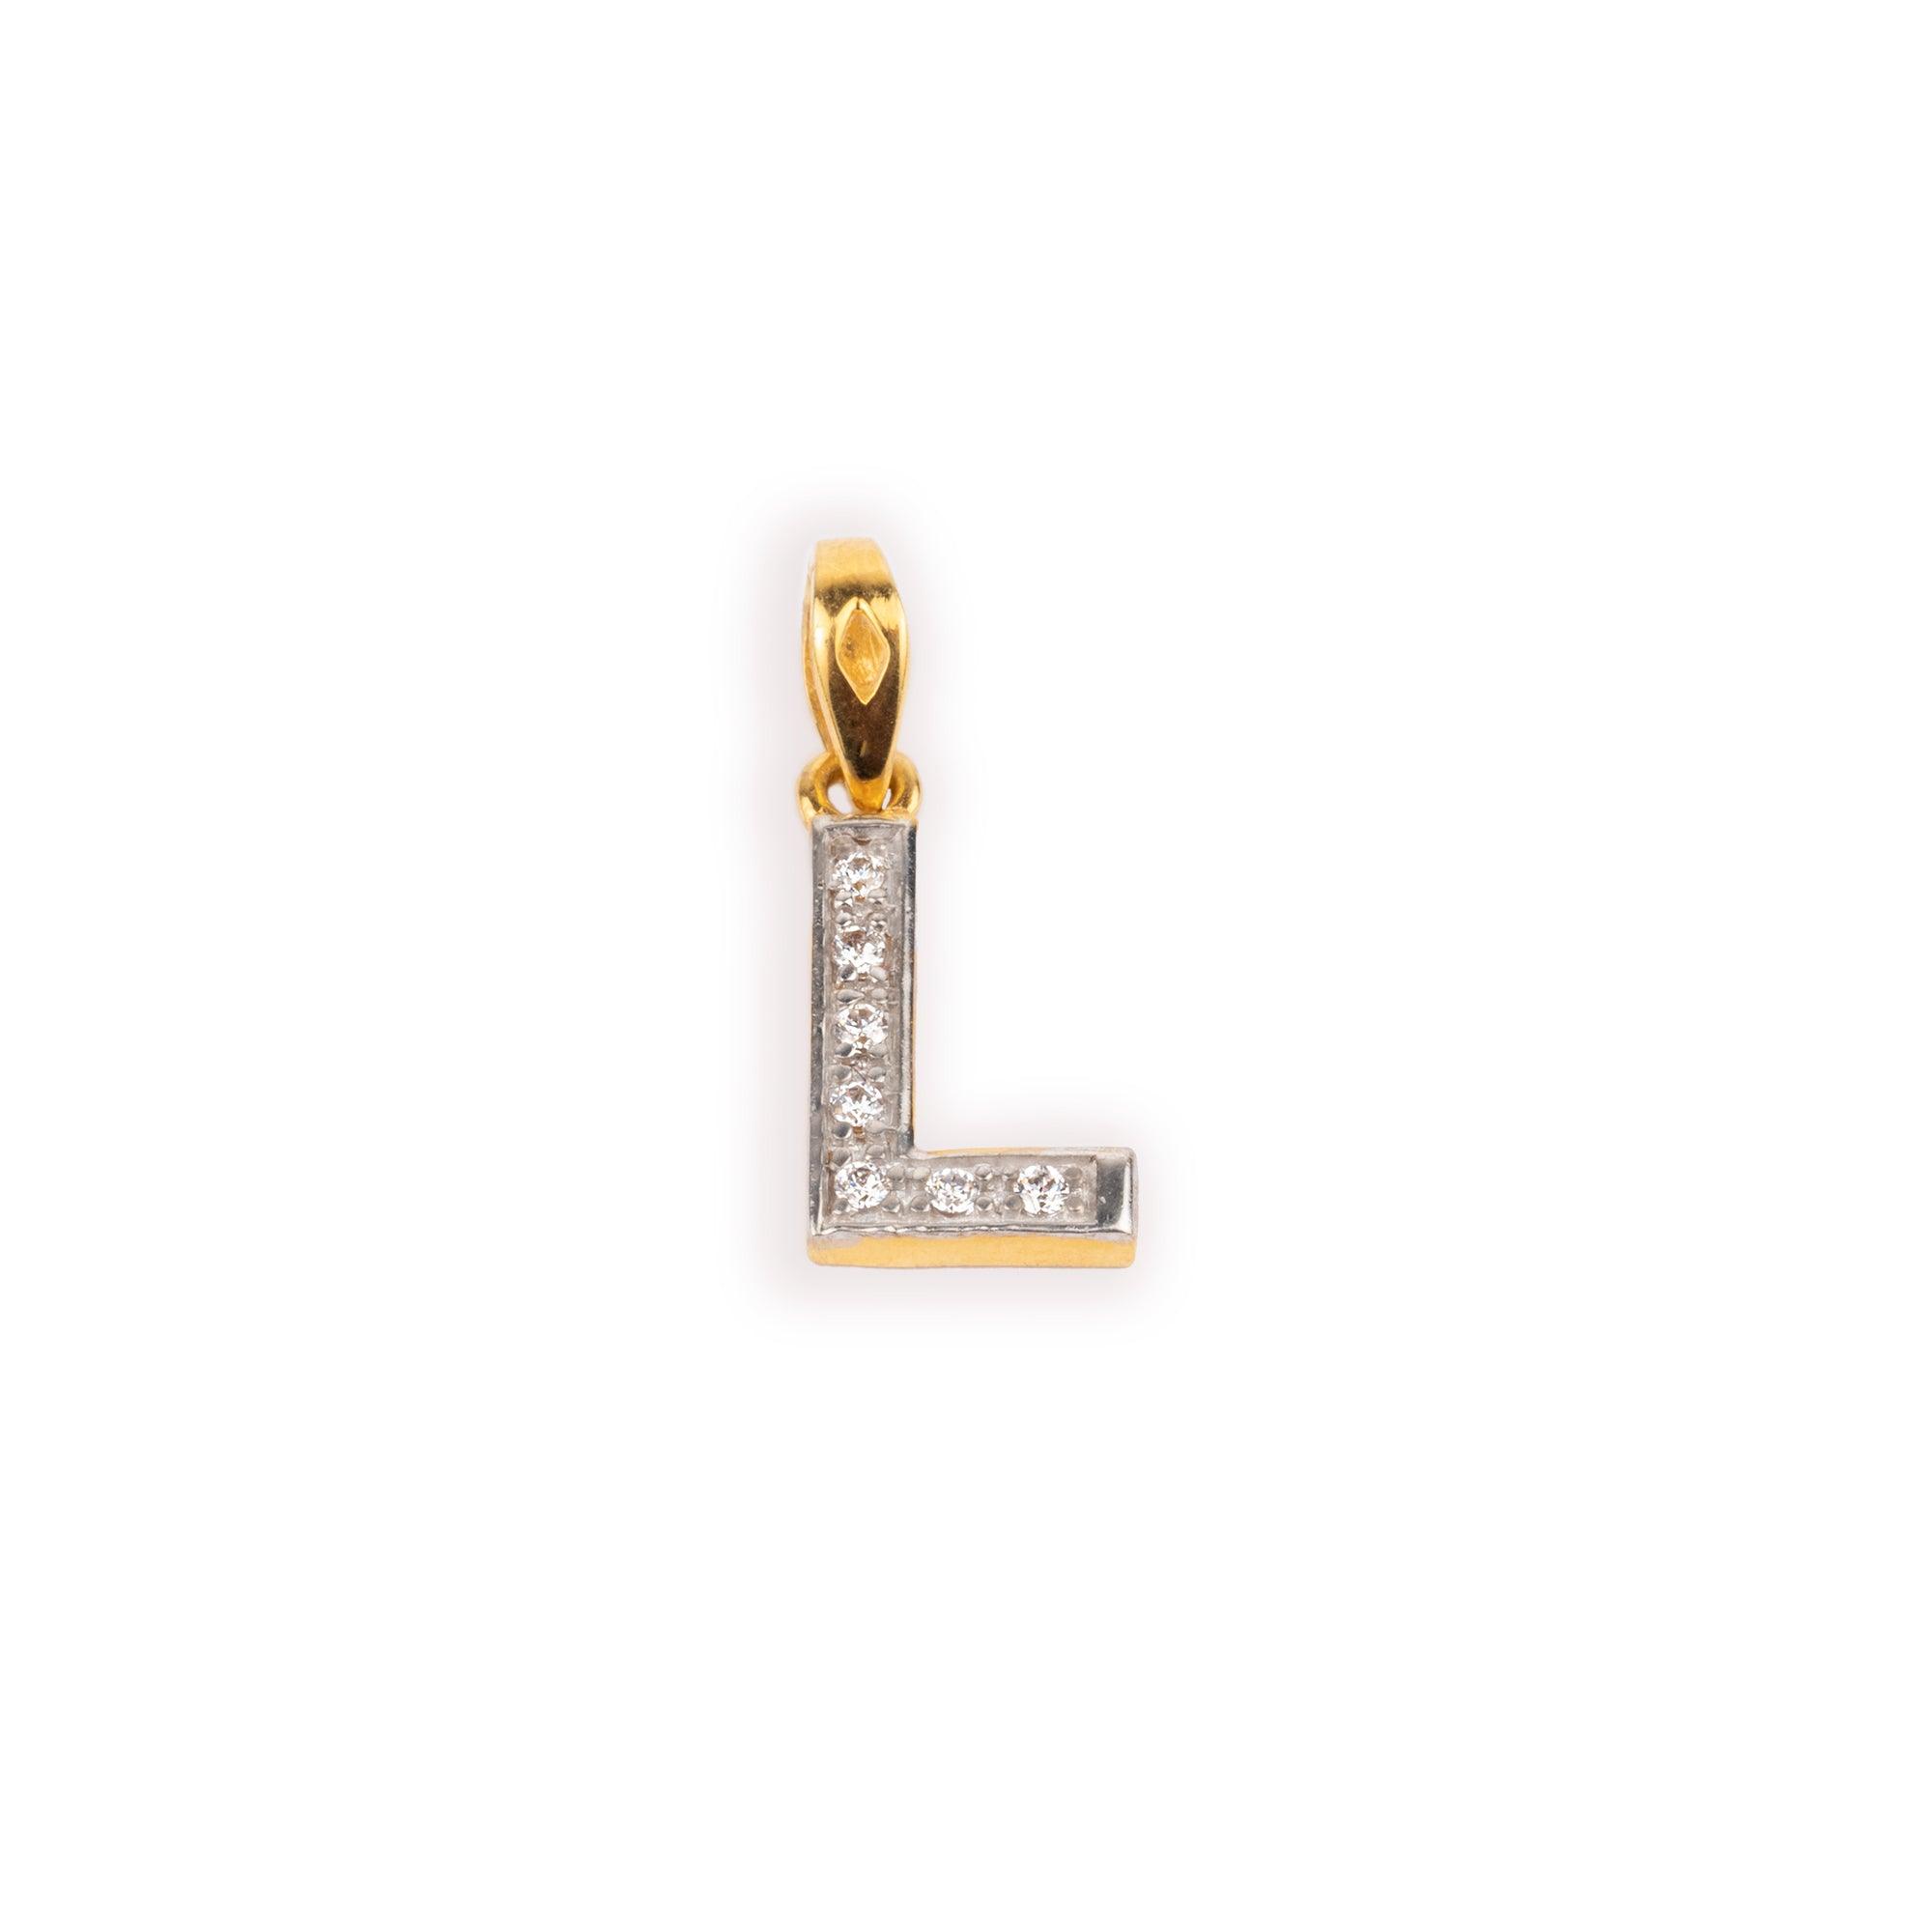 'L' 22ct Gold Swarovski Zirconia Initial Pendant P-7028 - Minar Jewellers